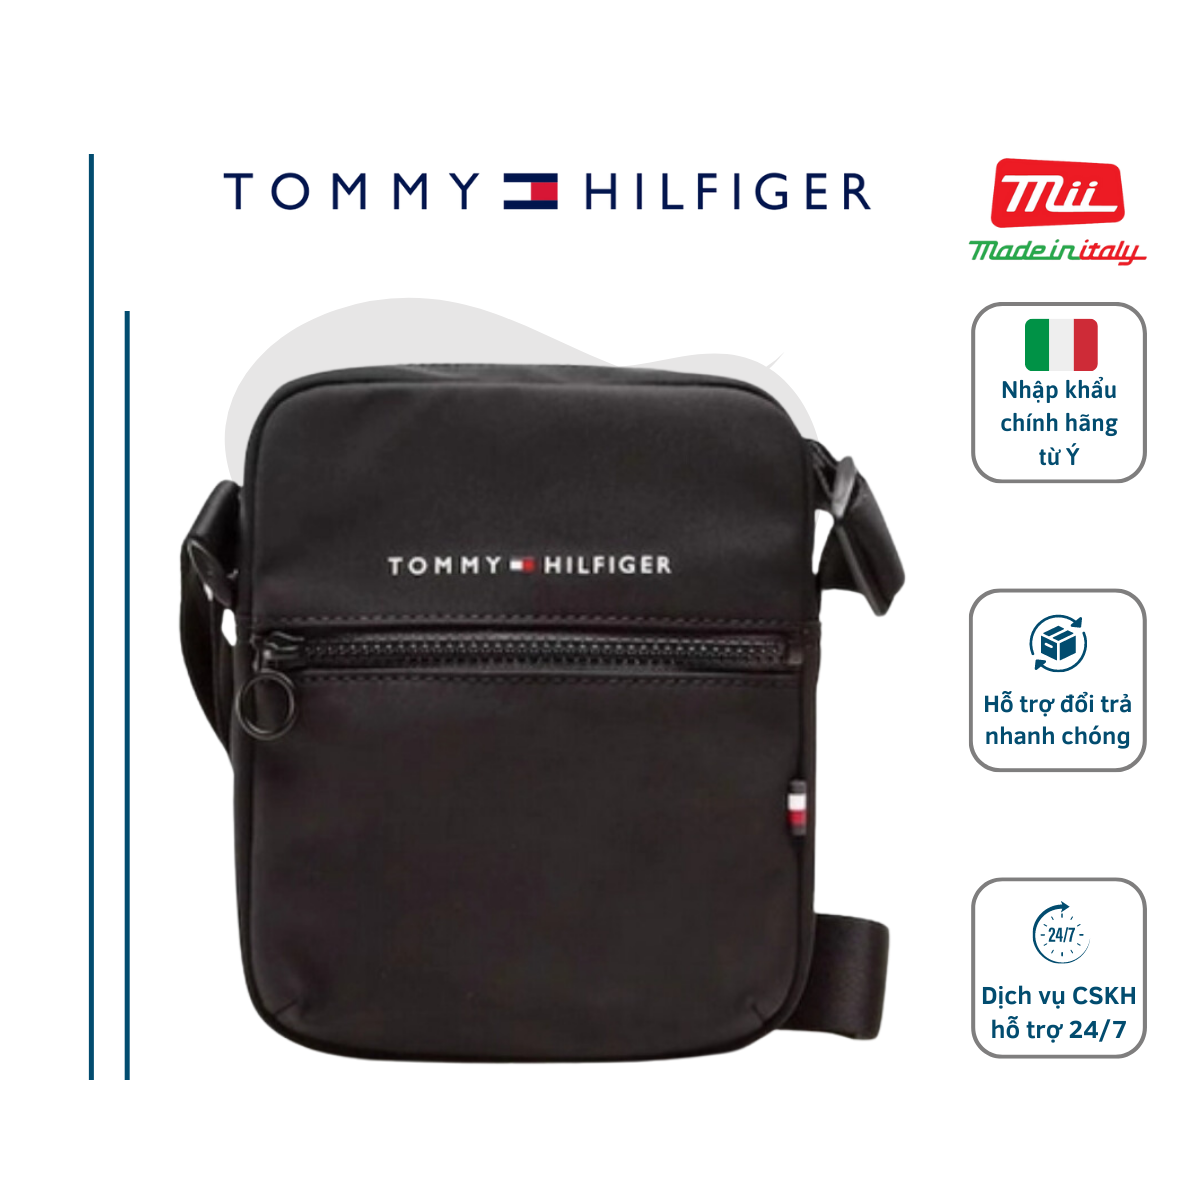 10 Mẫu túi xách Tommy Hilfiger chính hãng siêu đẹp trong năm 2021